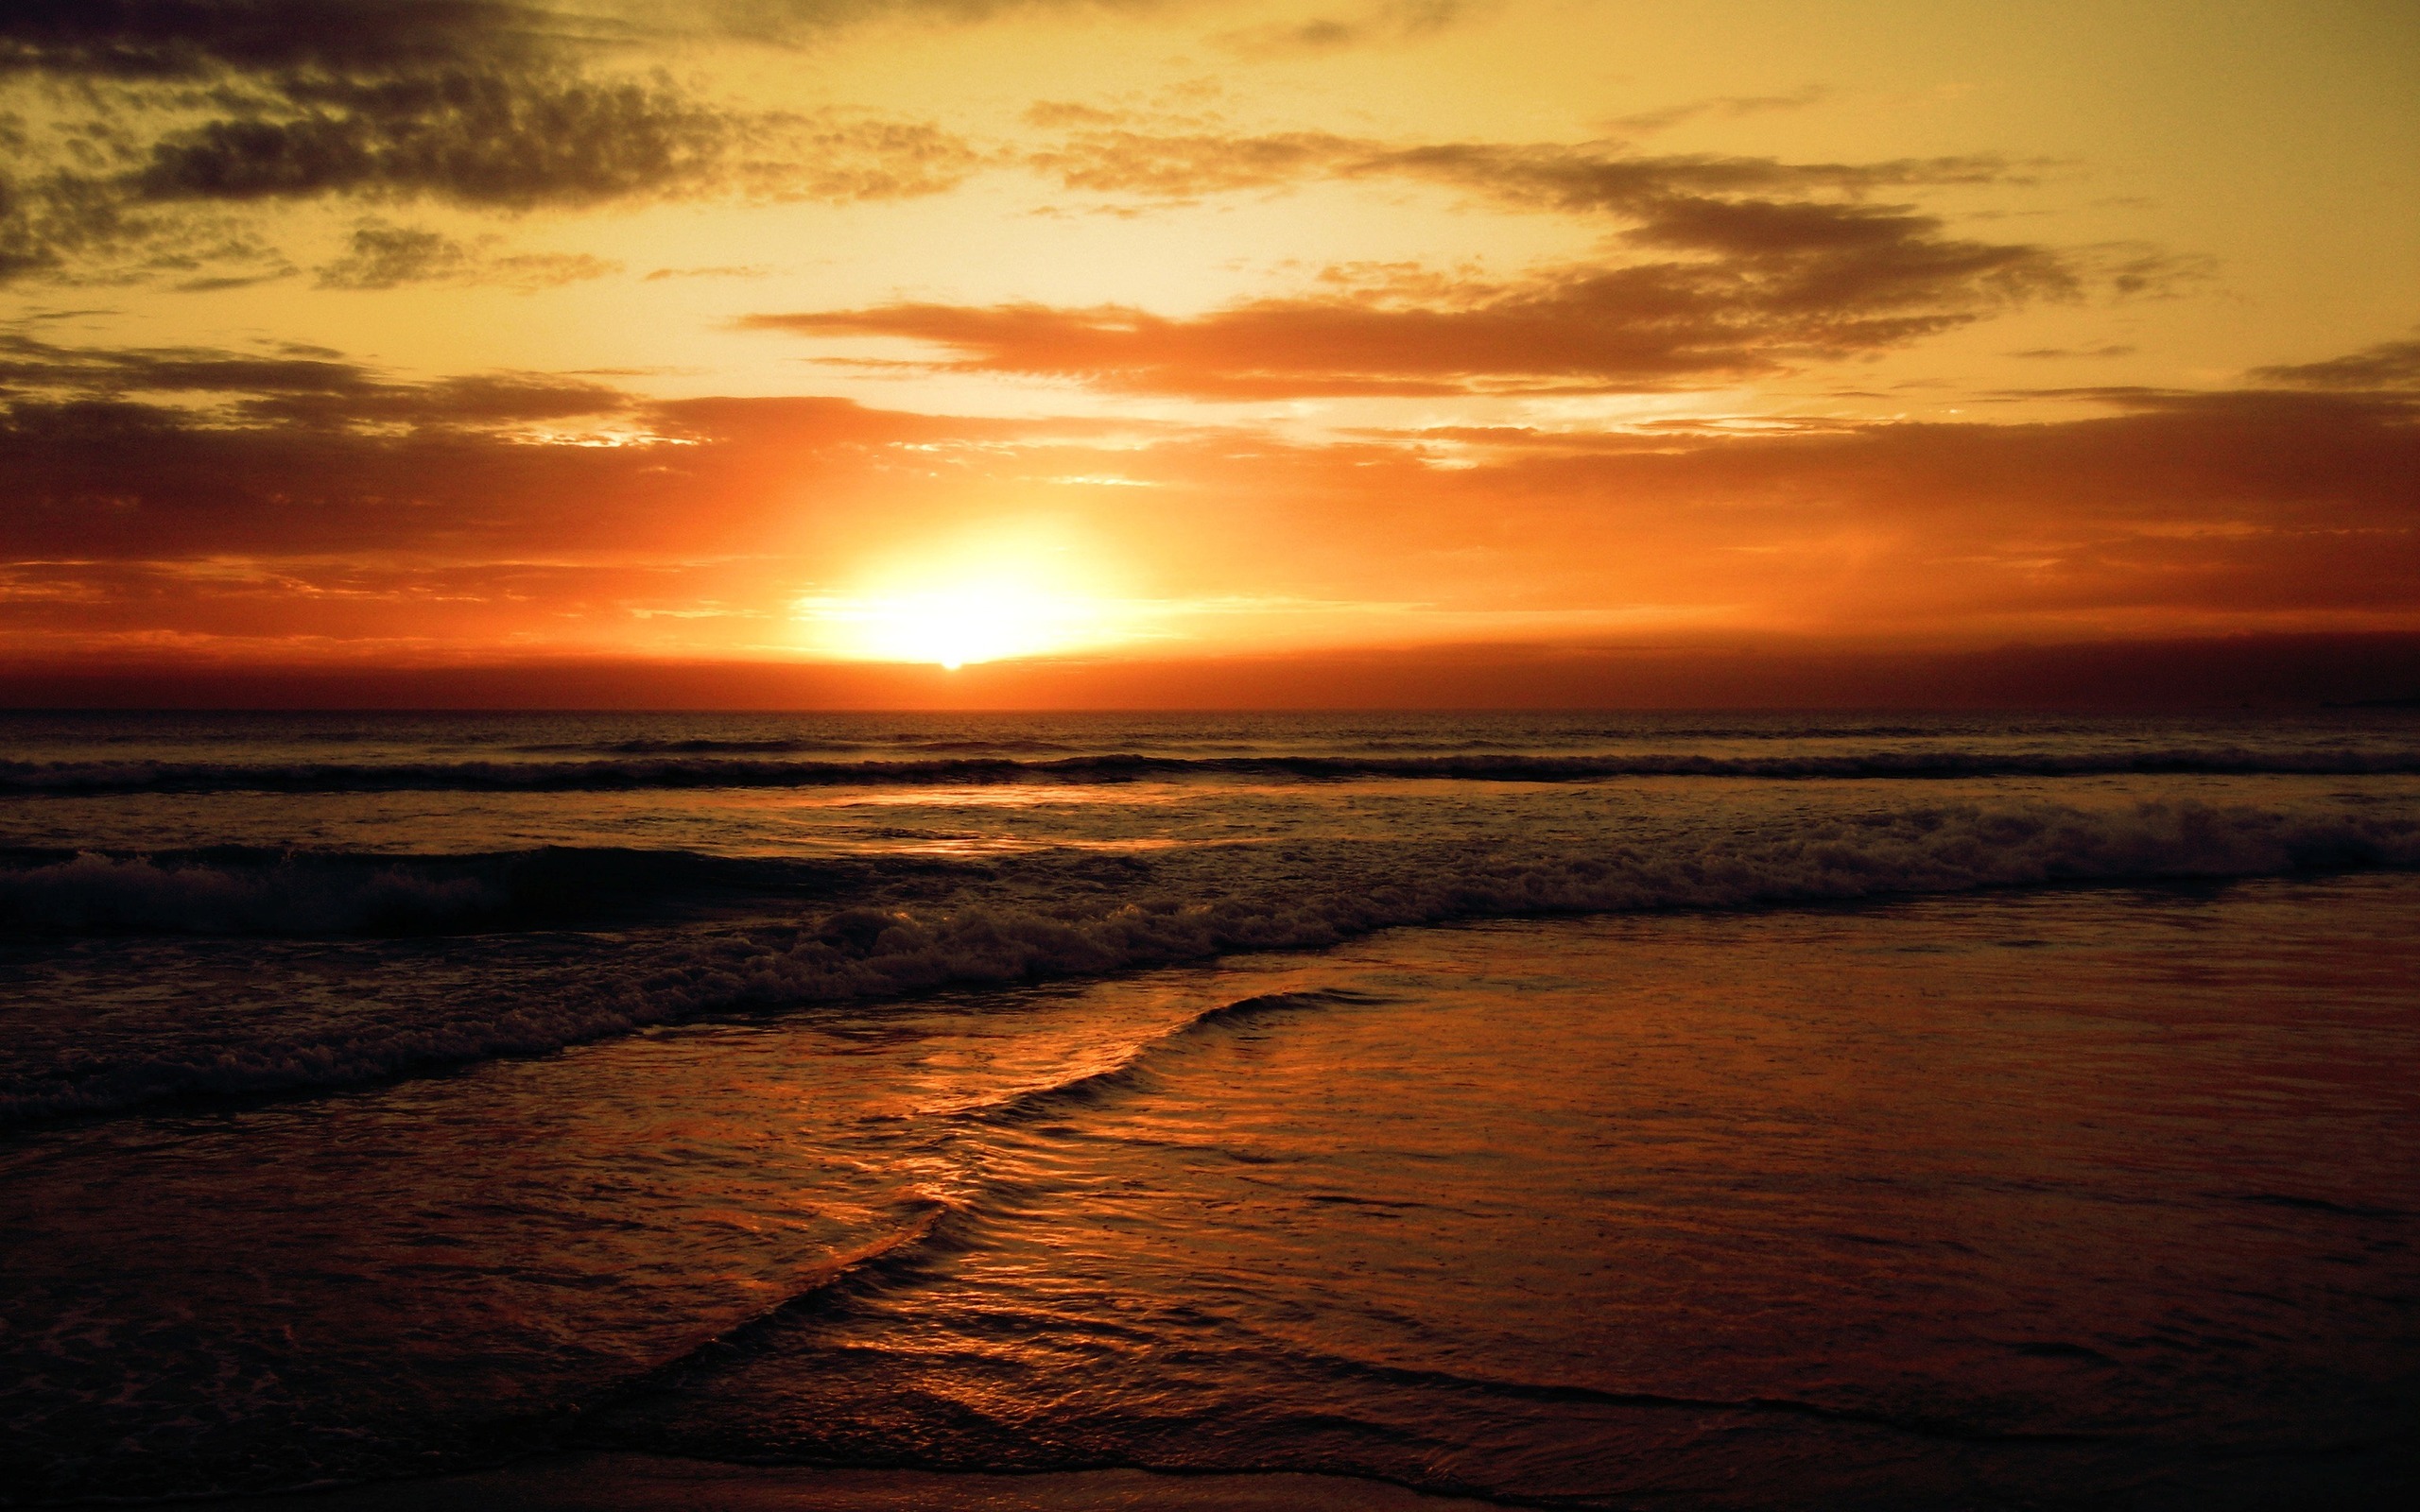 beach sunset wallpaper,sky,horizon,sunrise,sunset,red sky at morning